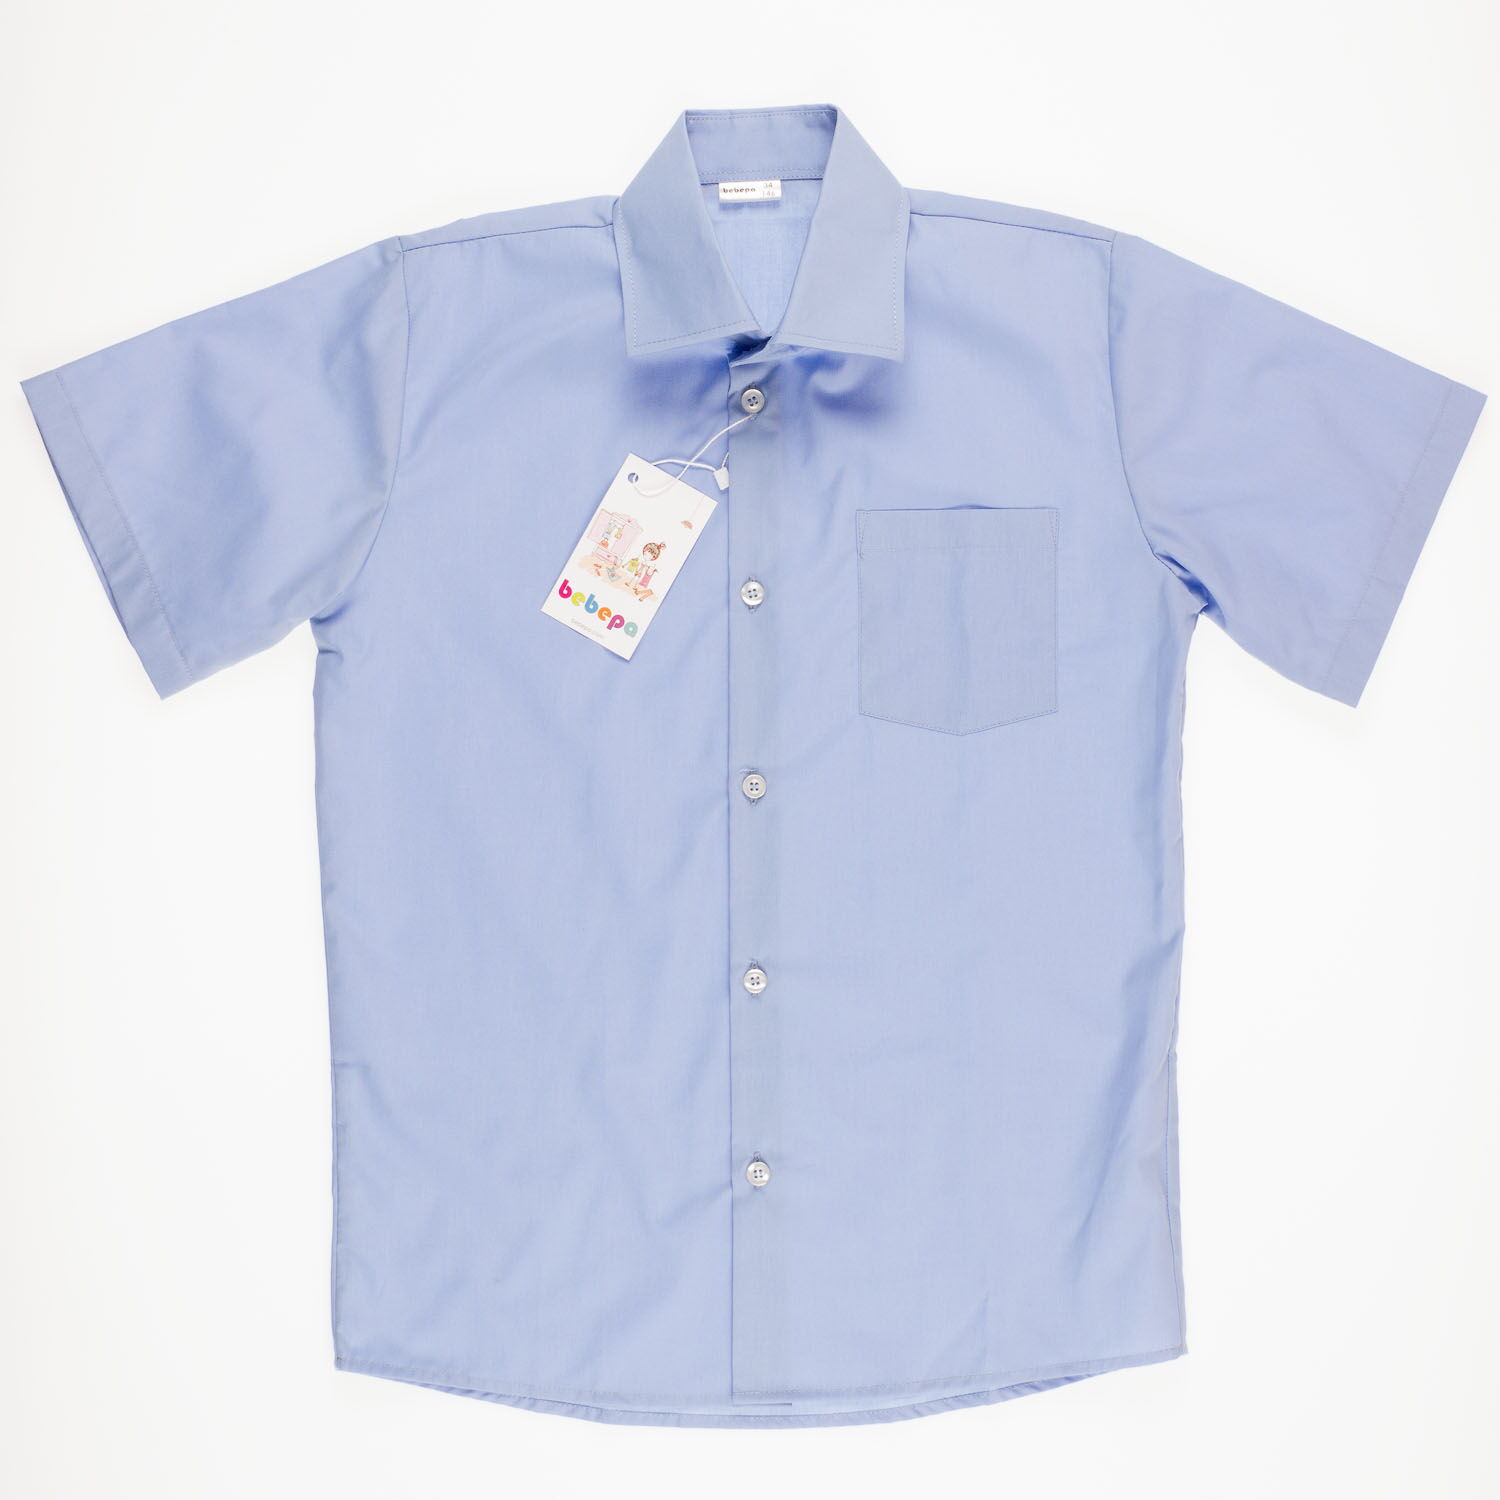 Рубашка с коротким рукавом для мальчика Bebepa синяя 1105-017 - фотография